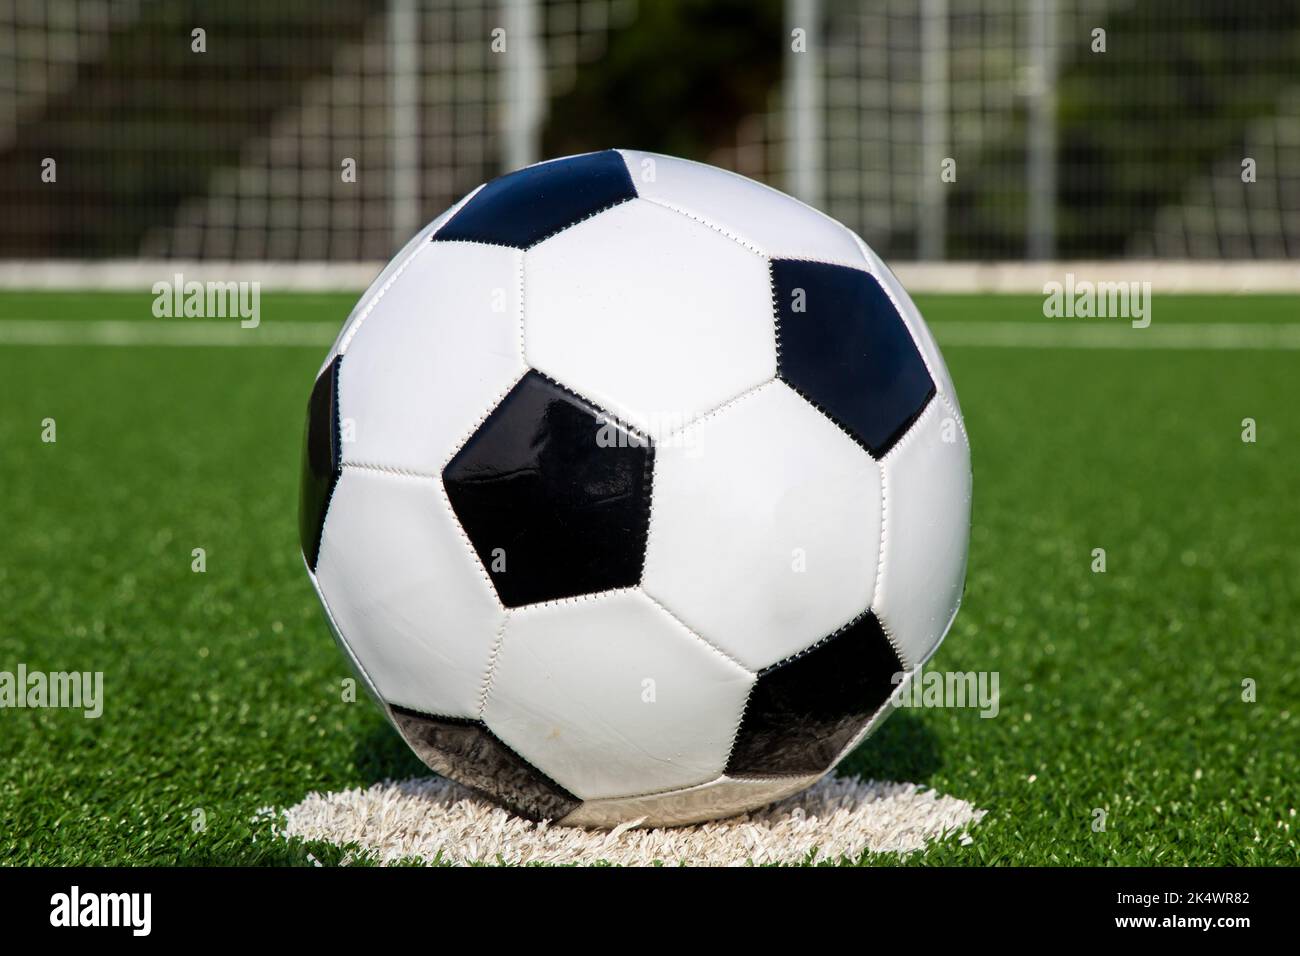 Imagen de símbolo: Fútbol en un campo de fútbol vacío Foto de stock